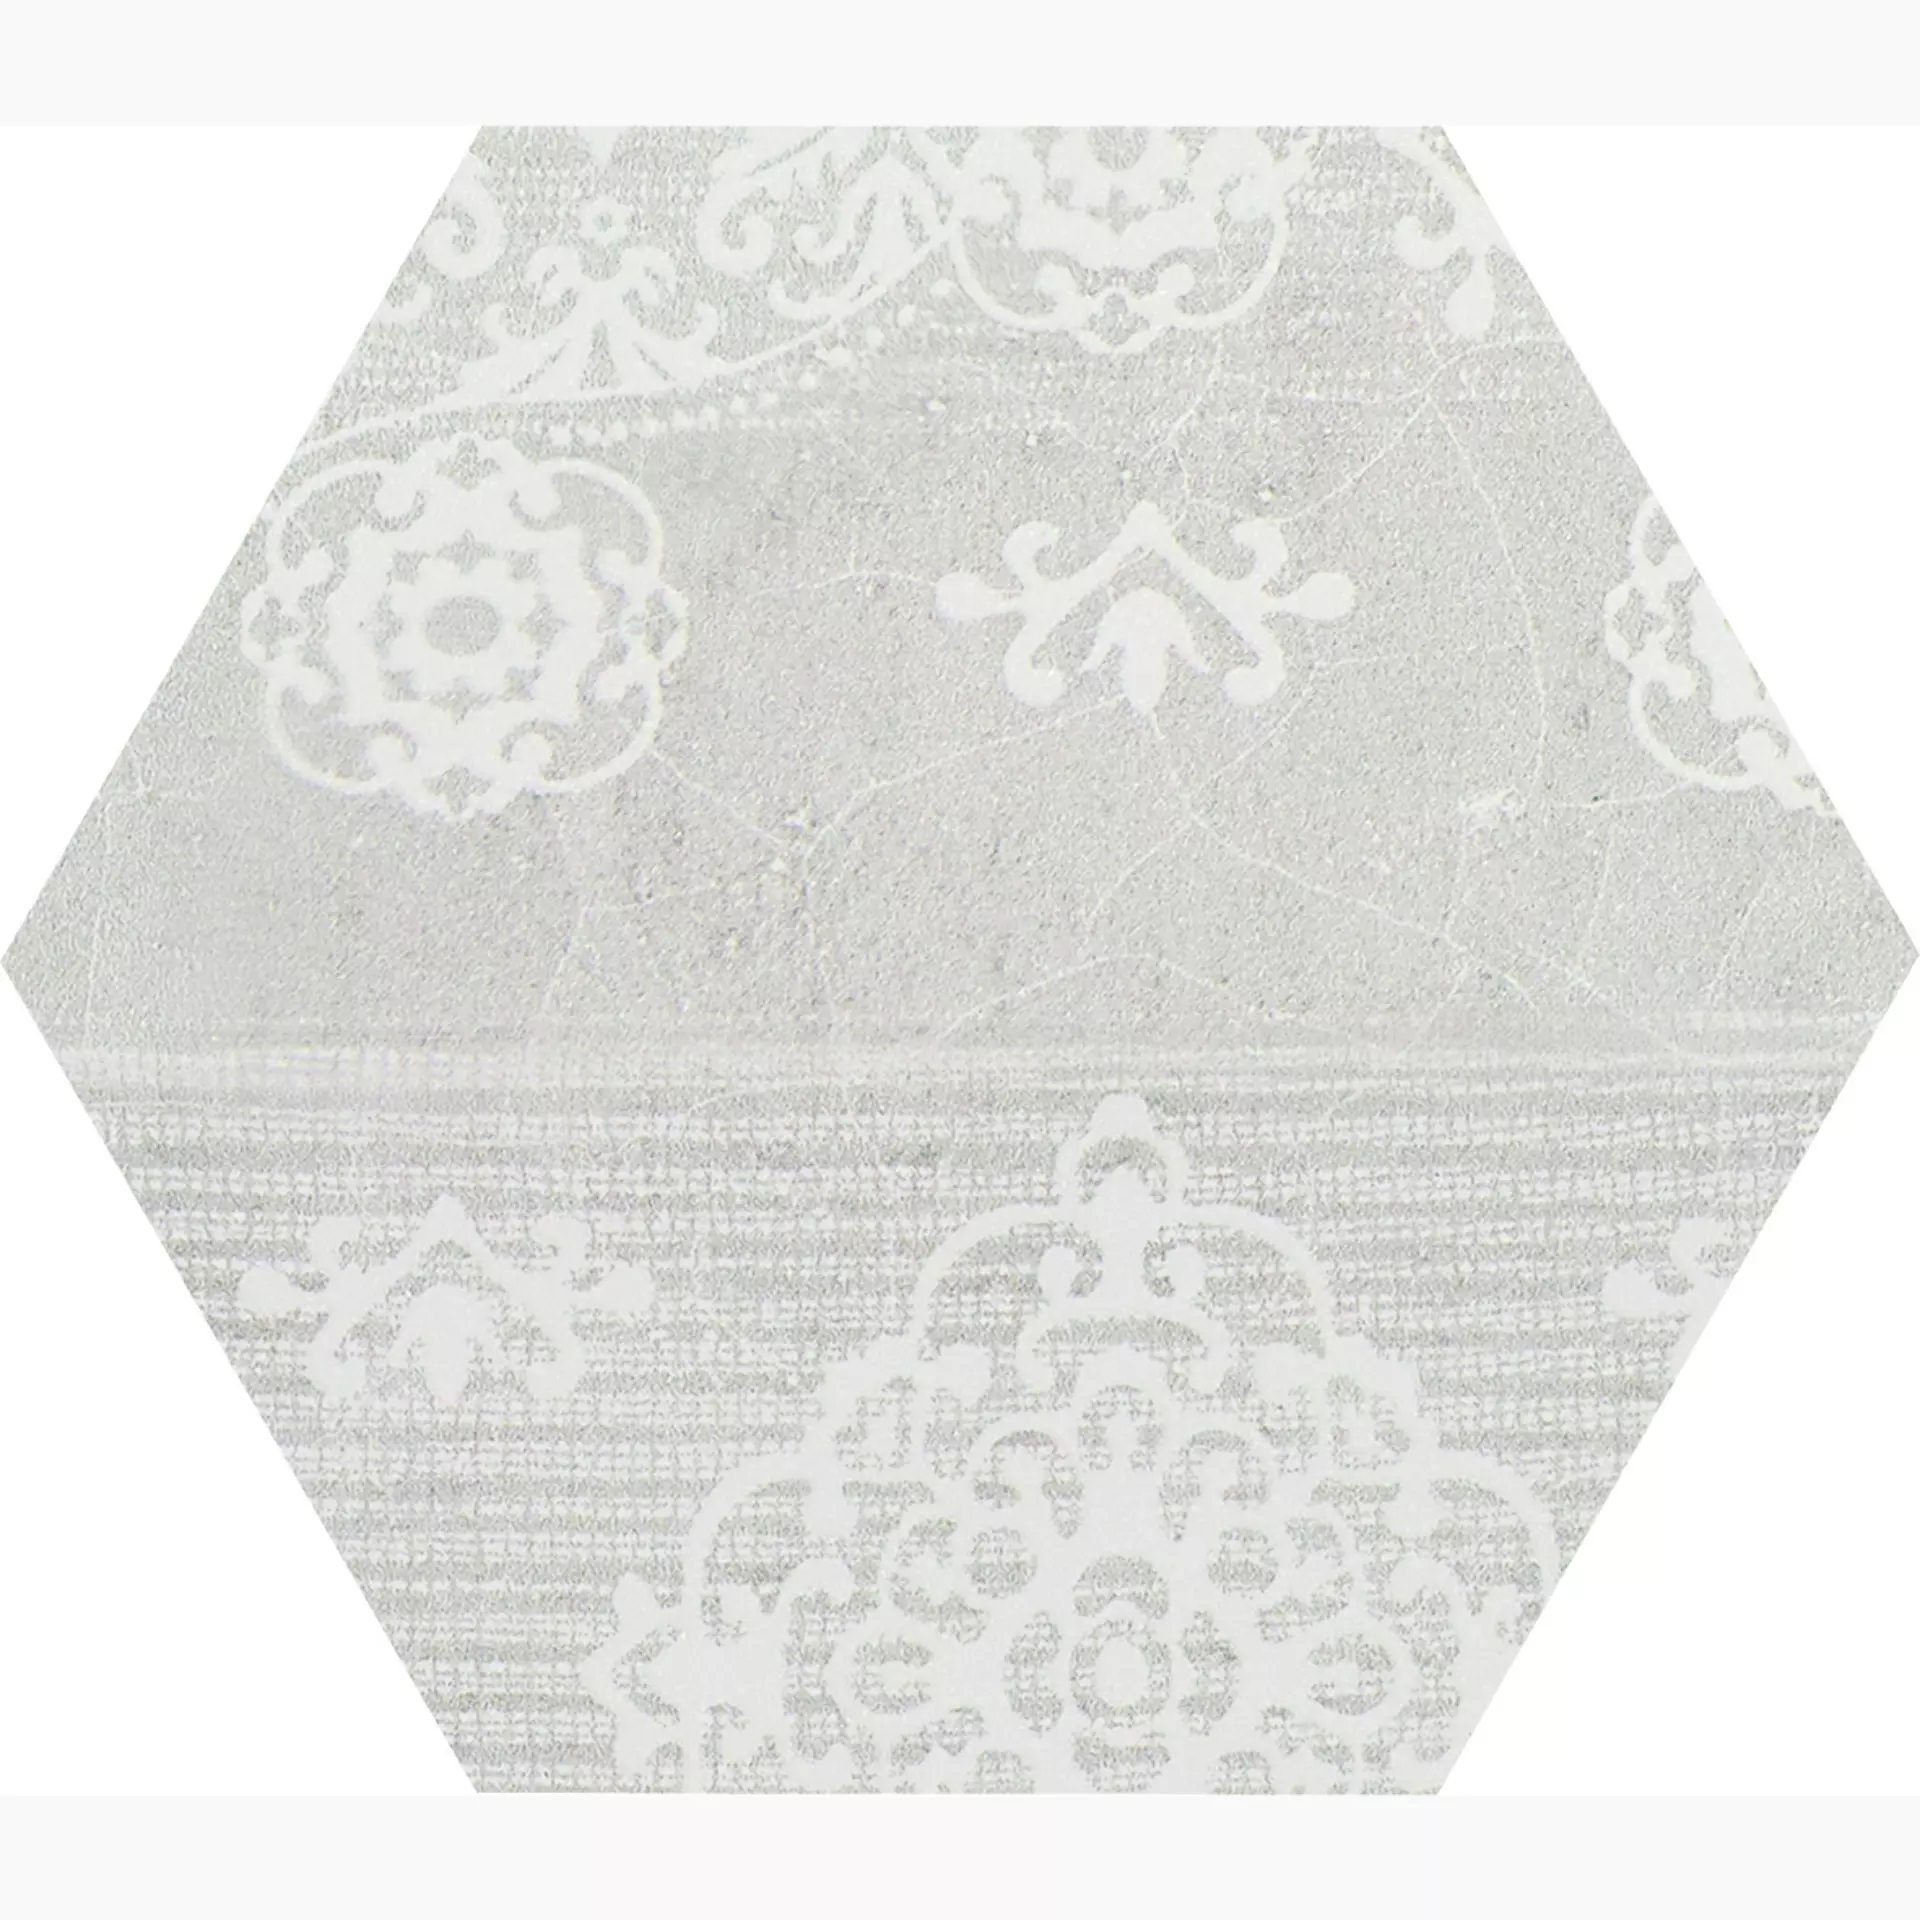 Provenza Gesso Natural White Naturale Esagona Patchwork E3F0 25,5x29,4cm 9,5mm